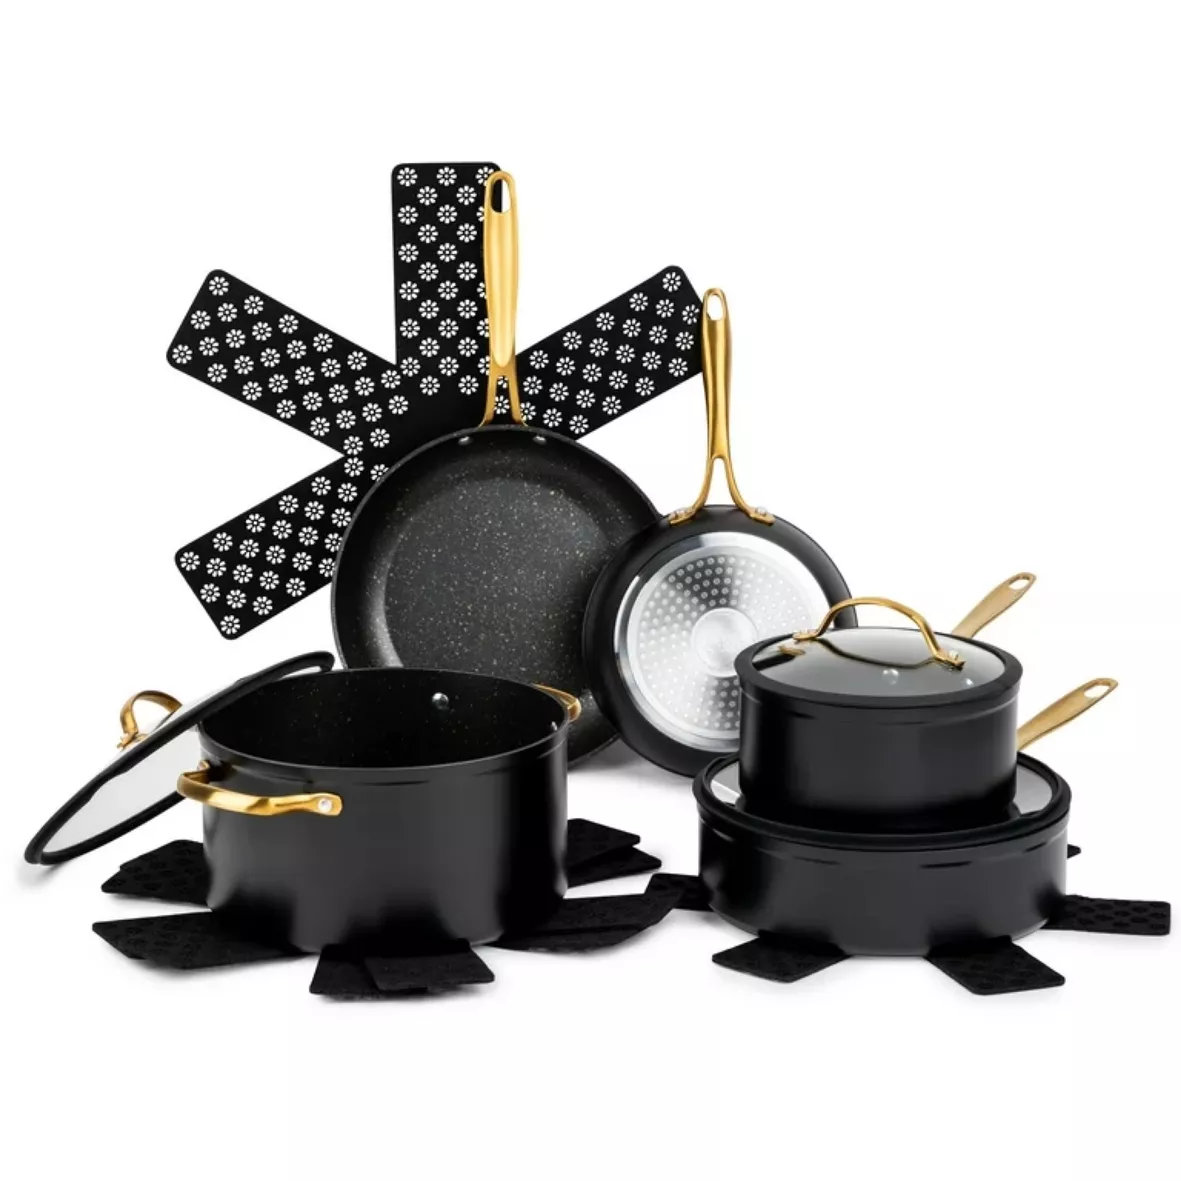 Mainstays 10-Piece Nonstick Cookware Set, Matte Black Rose Gold Handles 